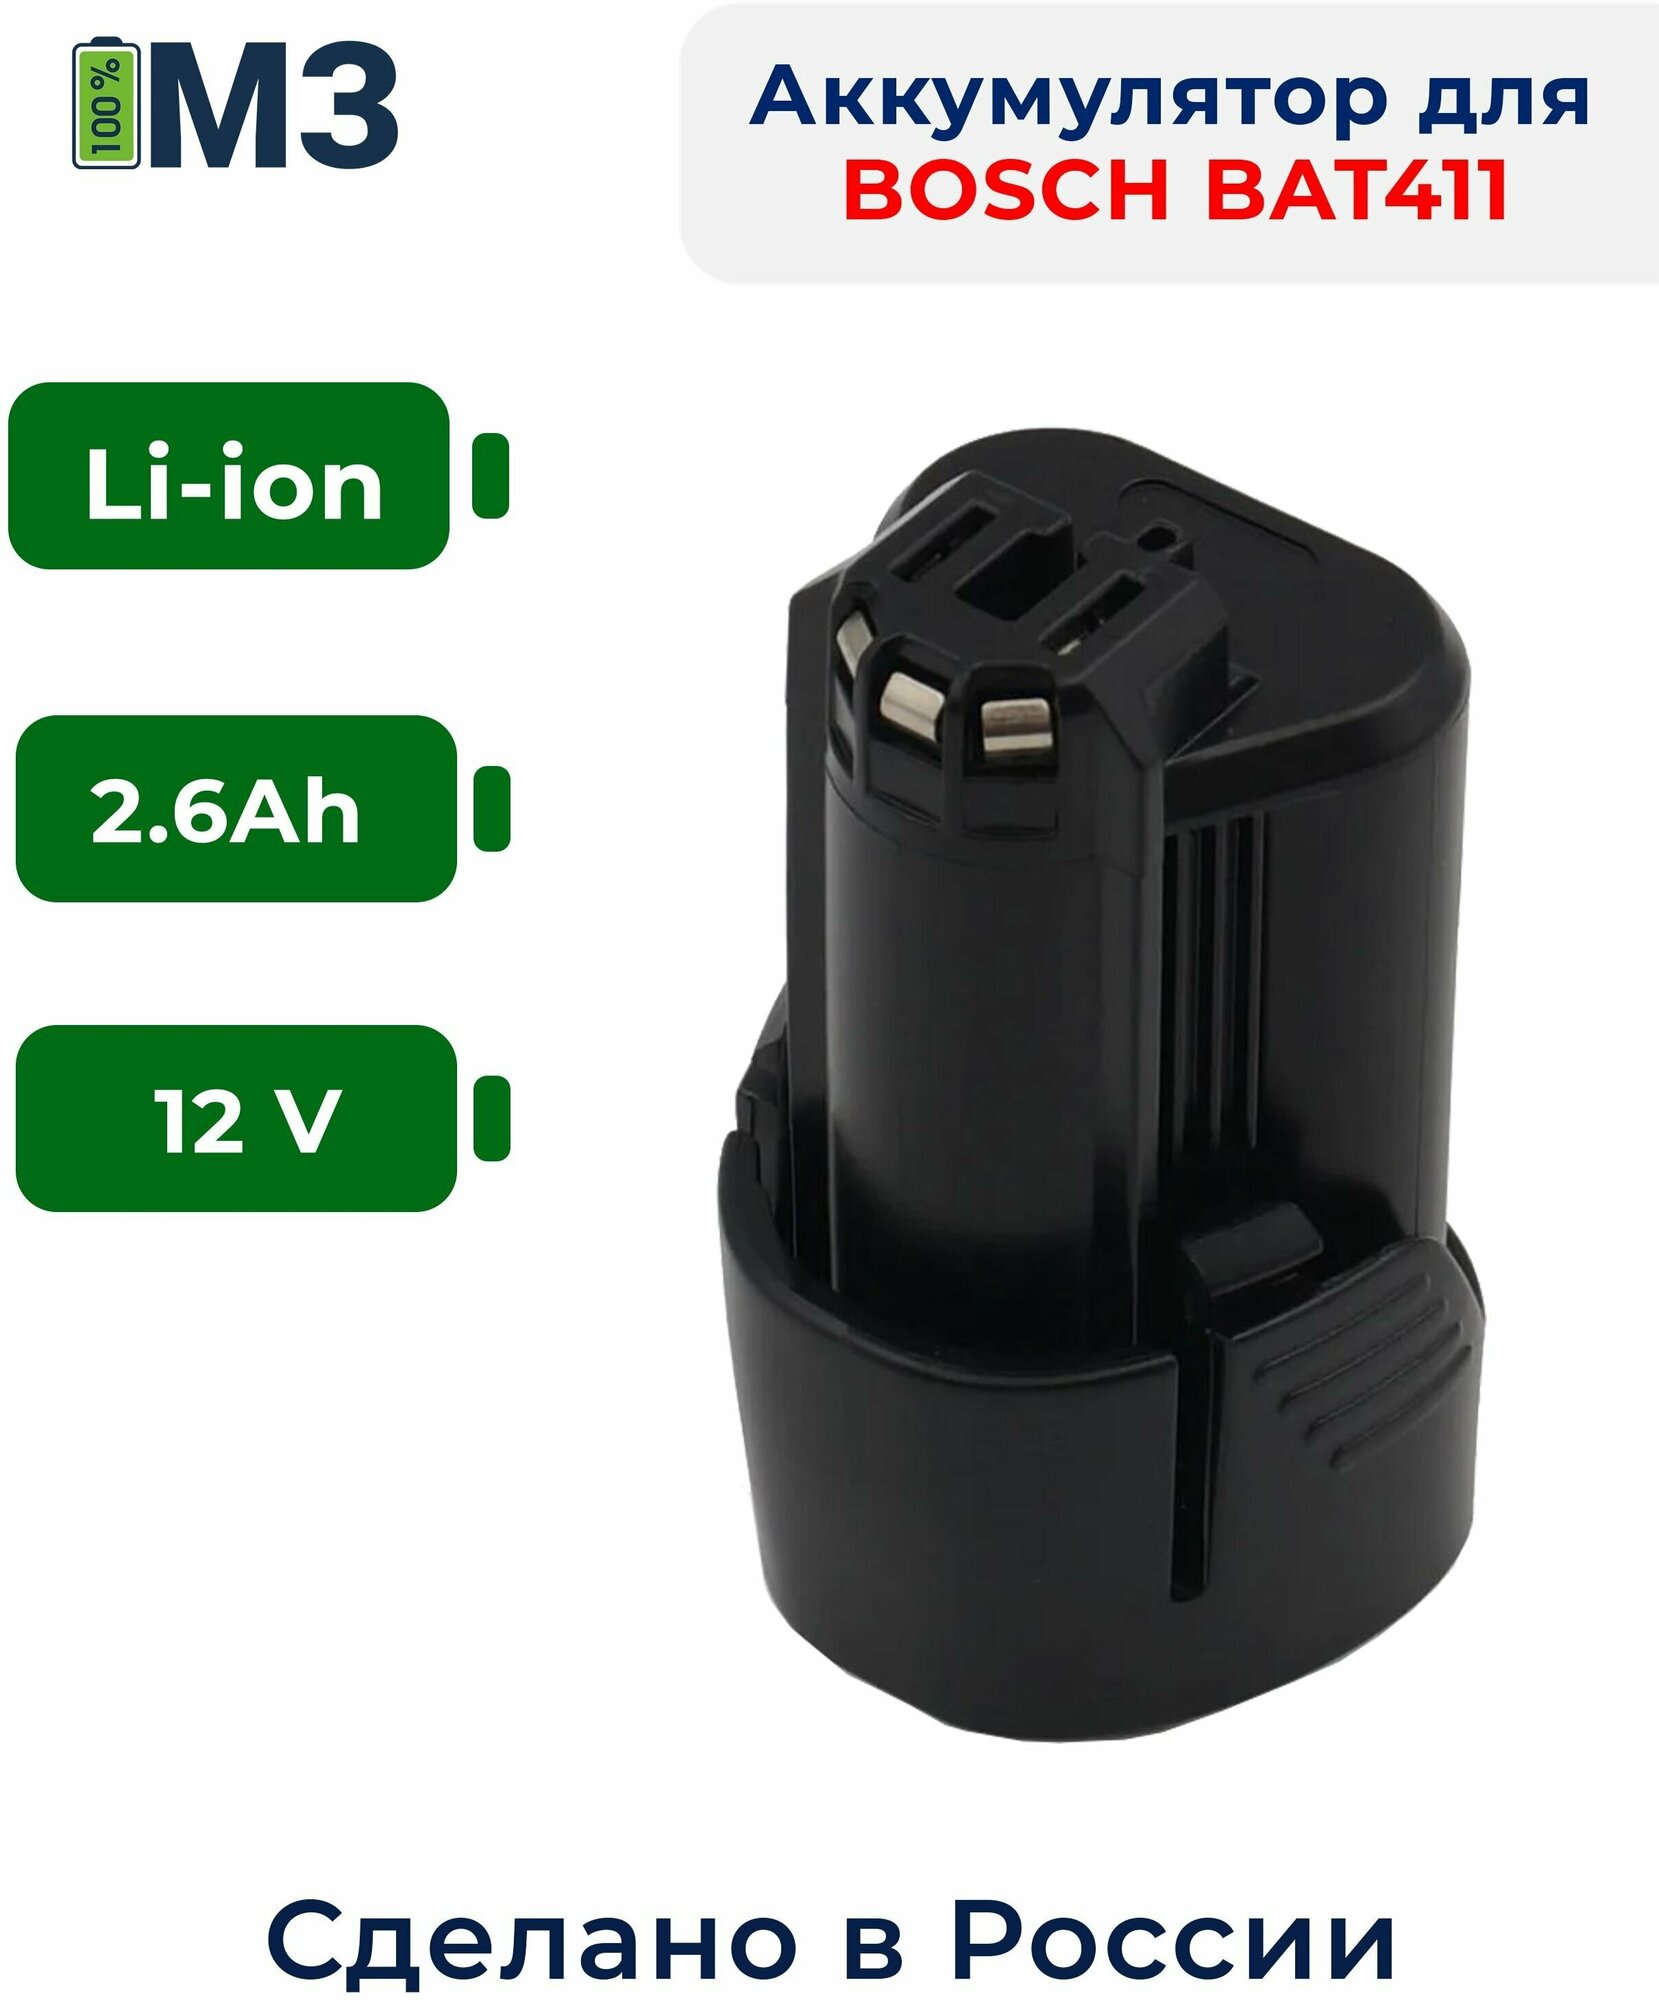 Аккумулятор для BOSCH (BAT411) 12V, 2.6Ah Li-Ion